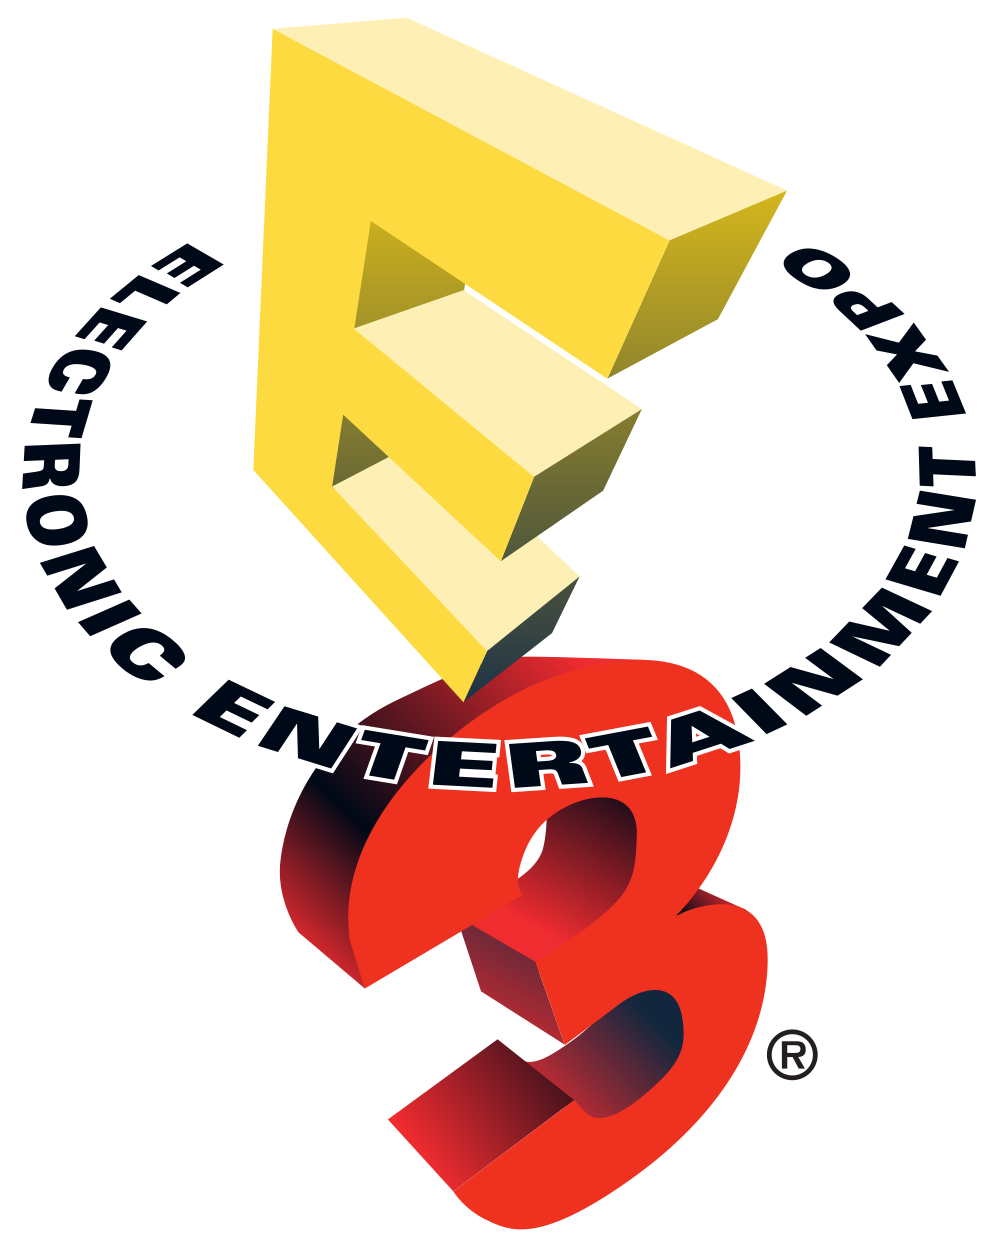 E3 2014: notre sélection de la conférence Electronic Arts